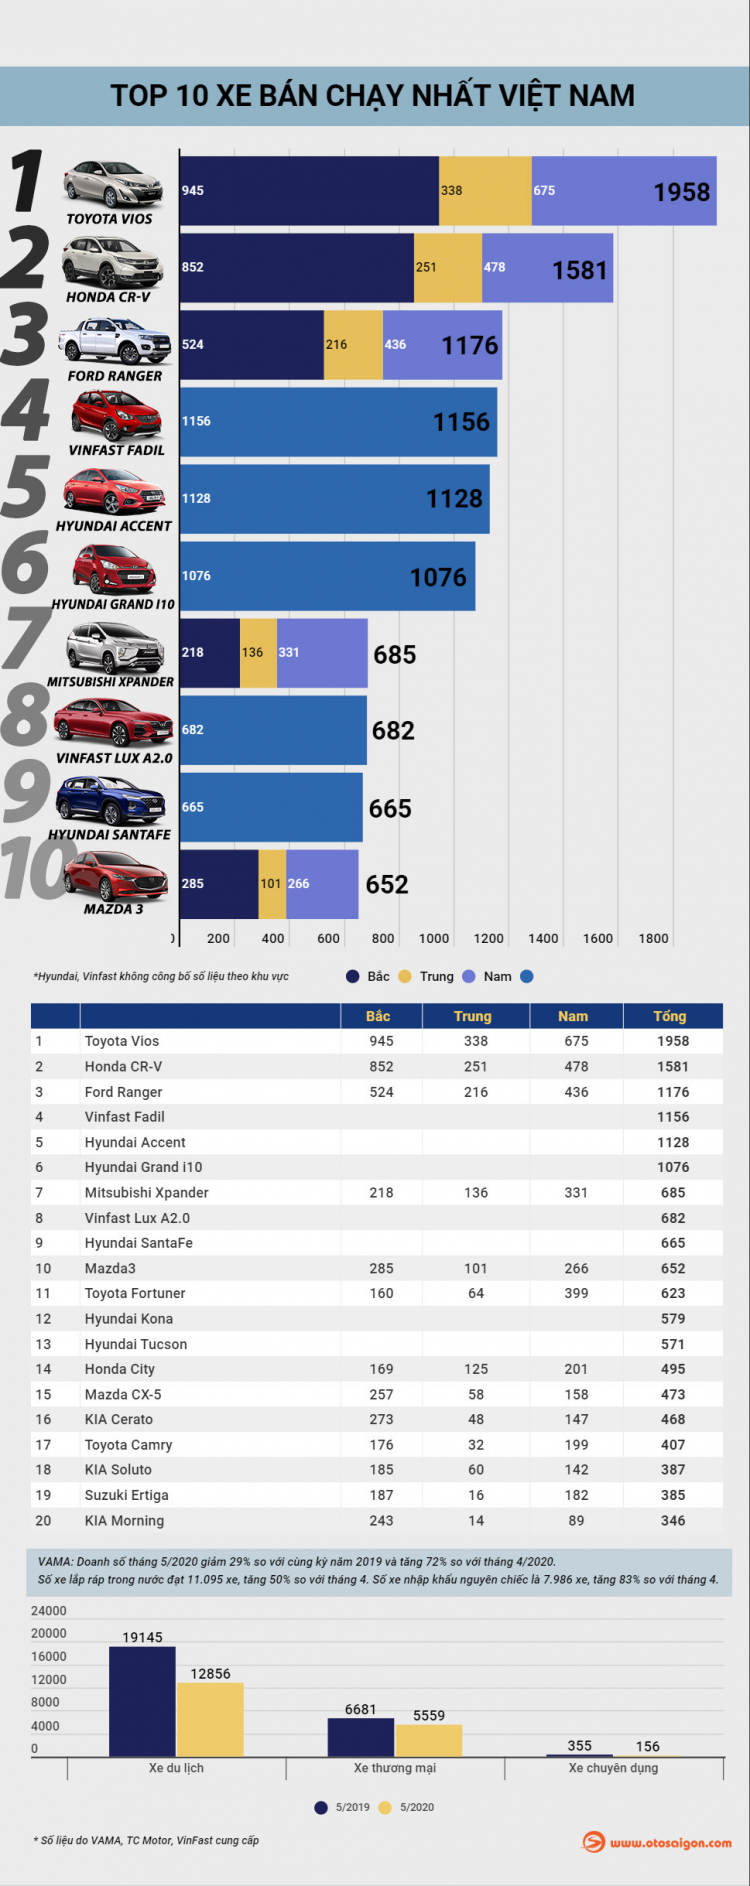 [Infographic] Top 10 xe bán chạy tại Việt Nam tháng 5/2020: VinFast lần đầu góp mặt